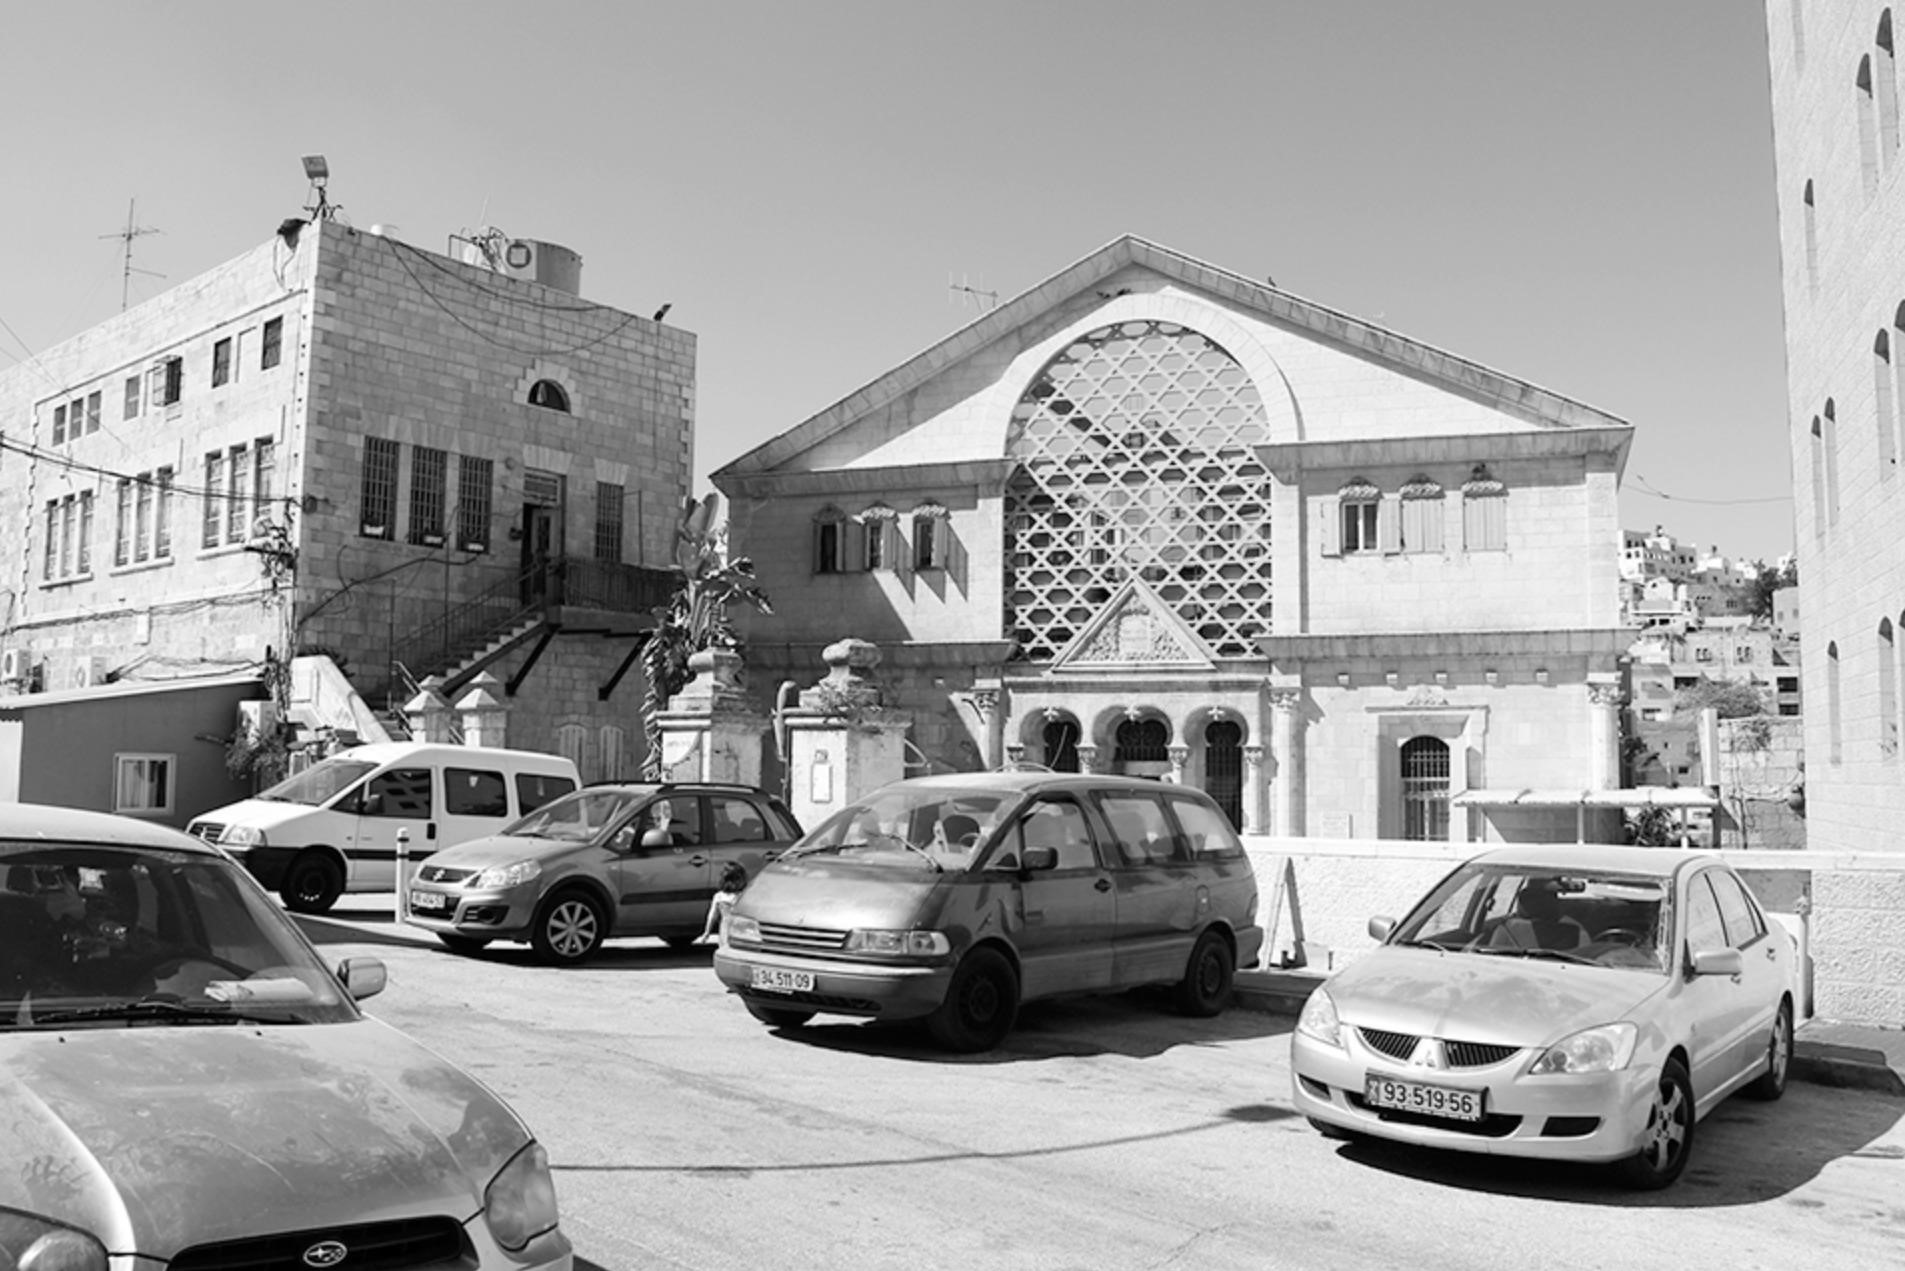 İlk kez 1893'te inşa edilen, ardından 1911'de genişletilen Beyt Hadassa, Yahudilerin şehirden uzaklaştırılmasıyla sonuçlanan 1929 olaylarından sonra terk edilmiştir. 1948-1967 arasındaki Ürdün hâkimiyeti döneminde, Beyt Hadassa, Arap çocuklarına okul olarak kullanılmıştır. Binanın ismi, ABD merkezli Siyonist yardım örgütü 'Hadassa'ya ait sağlık ocağının 1929'a kadar burada hizmet vermesi nedeniyledir. 'Hadassa' ise, bugünkü Tevrat metinlerinde anılan Yahudi Kraliçe Ester'in İbranicedeki adıdır.